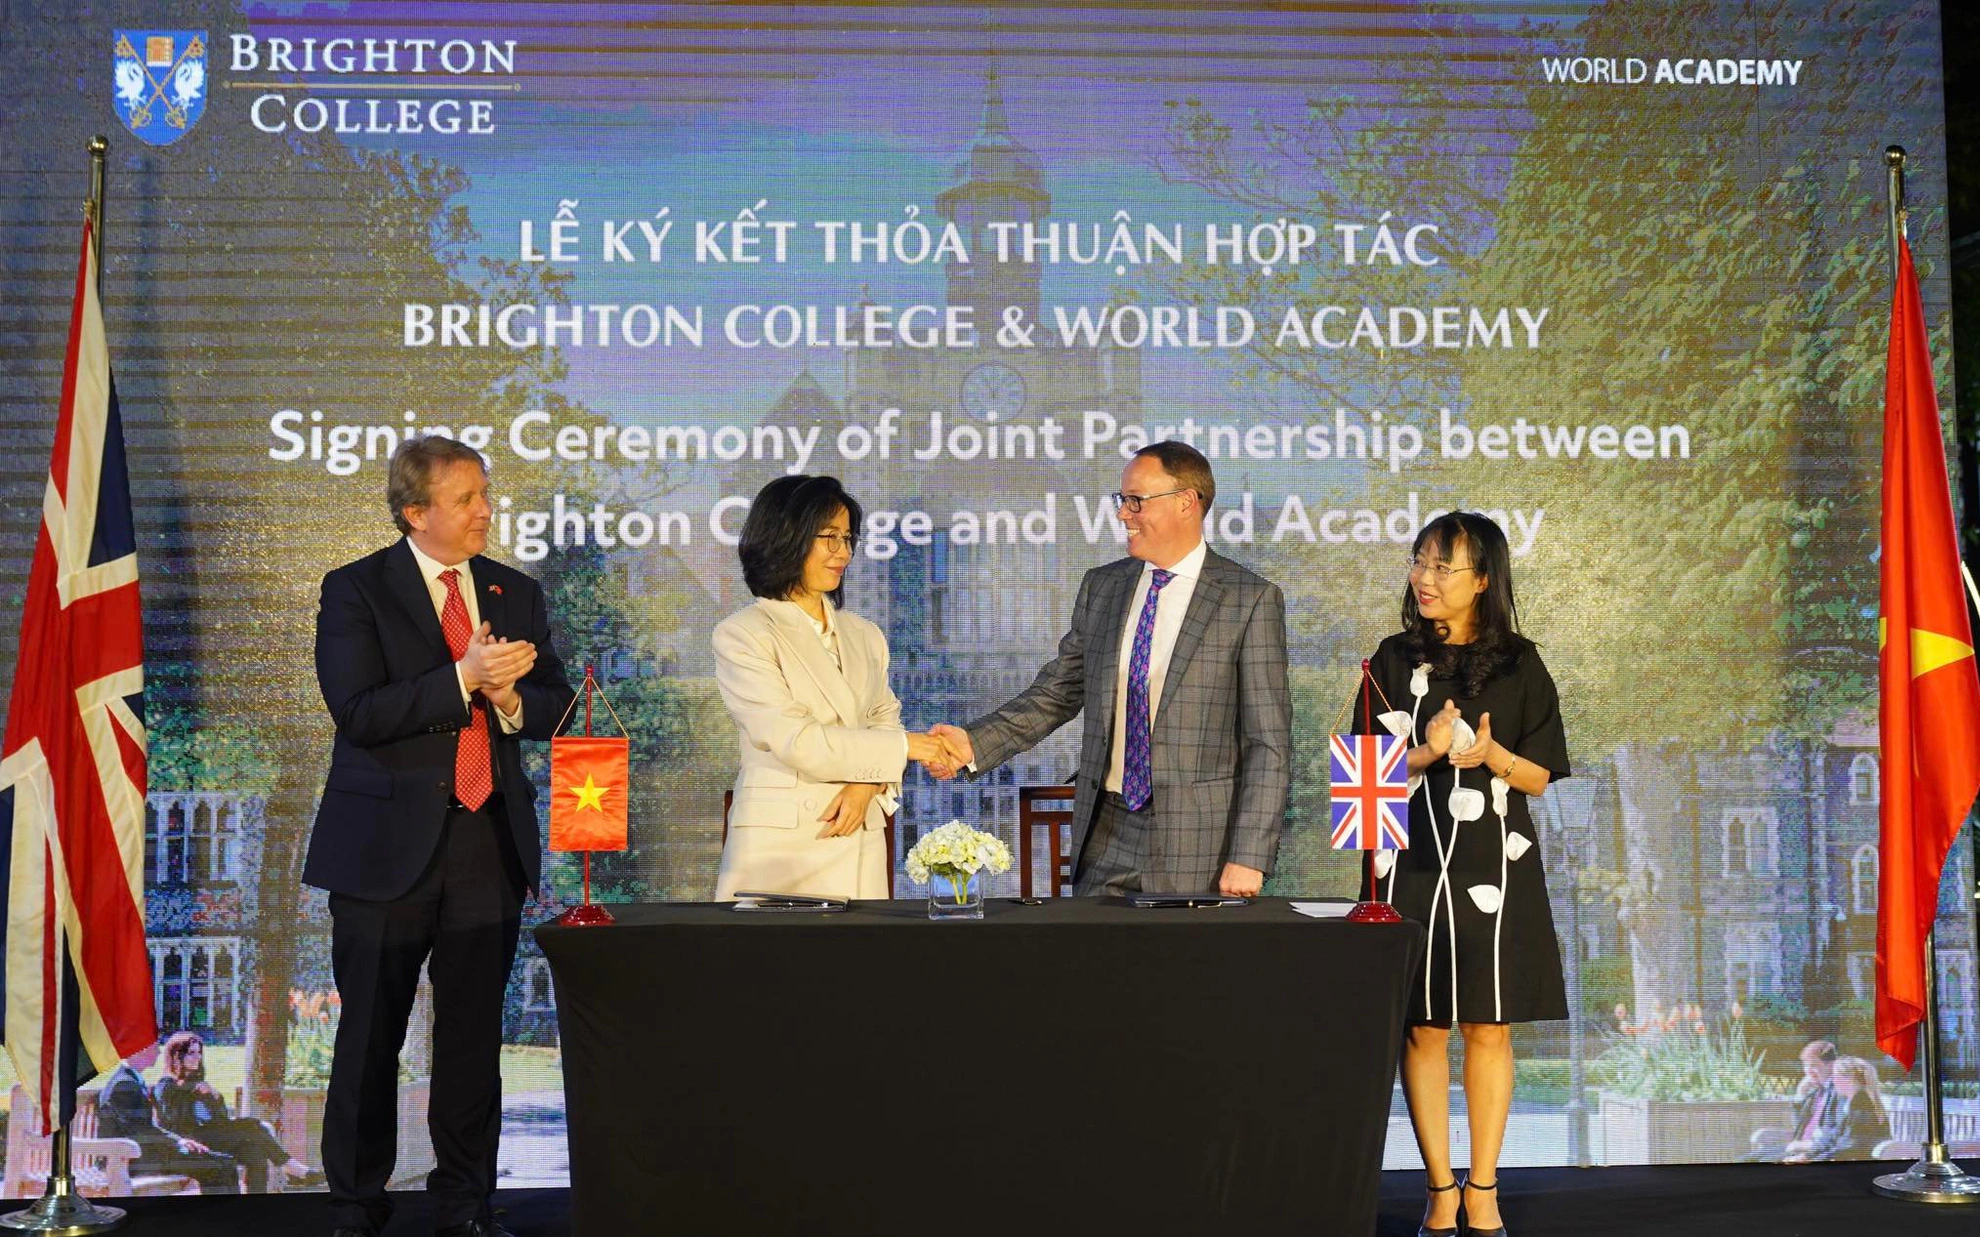 Vingroup hợp tác Brighton College mở rộng hệ thống trường quốc tế tại Việt Nam